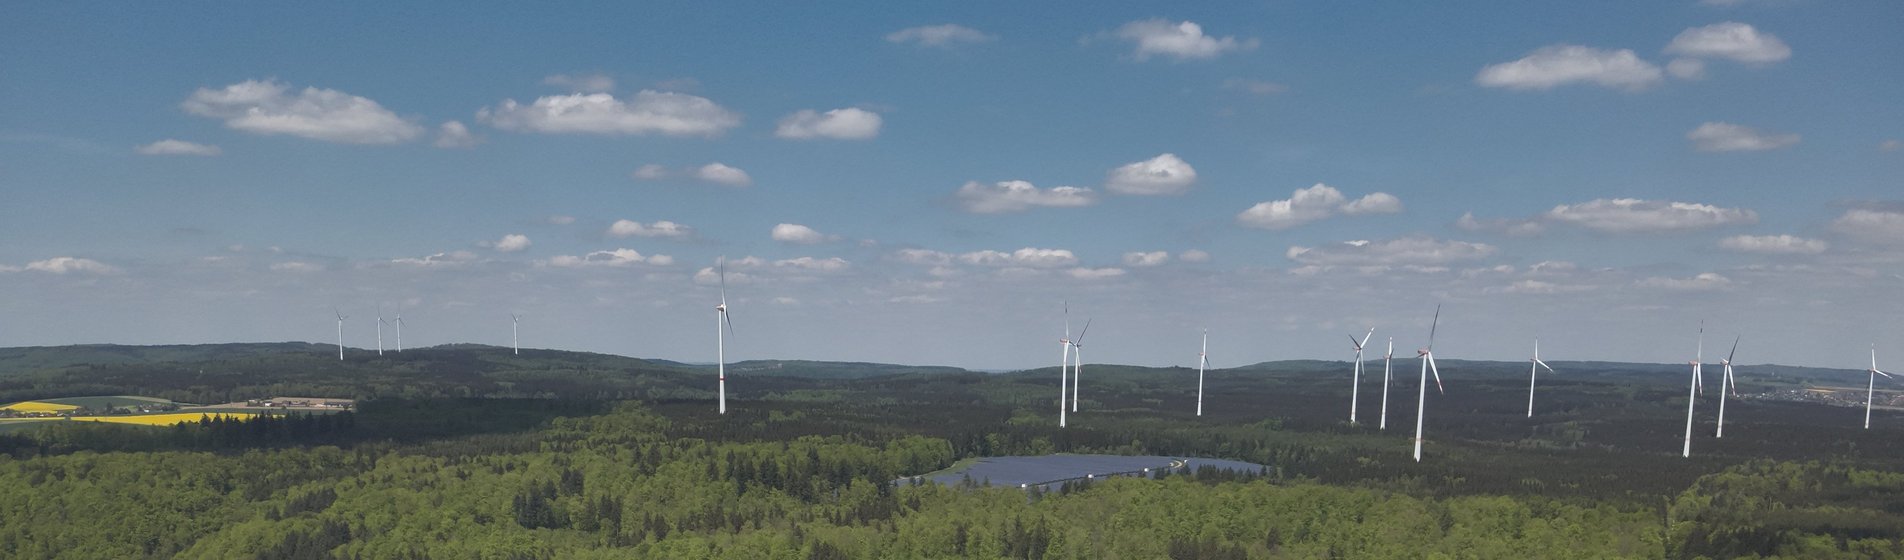 Drohnenbild des Solarparks Ochsenberg im Wald, umgeben von Windrädern.